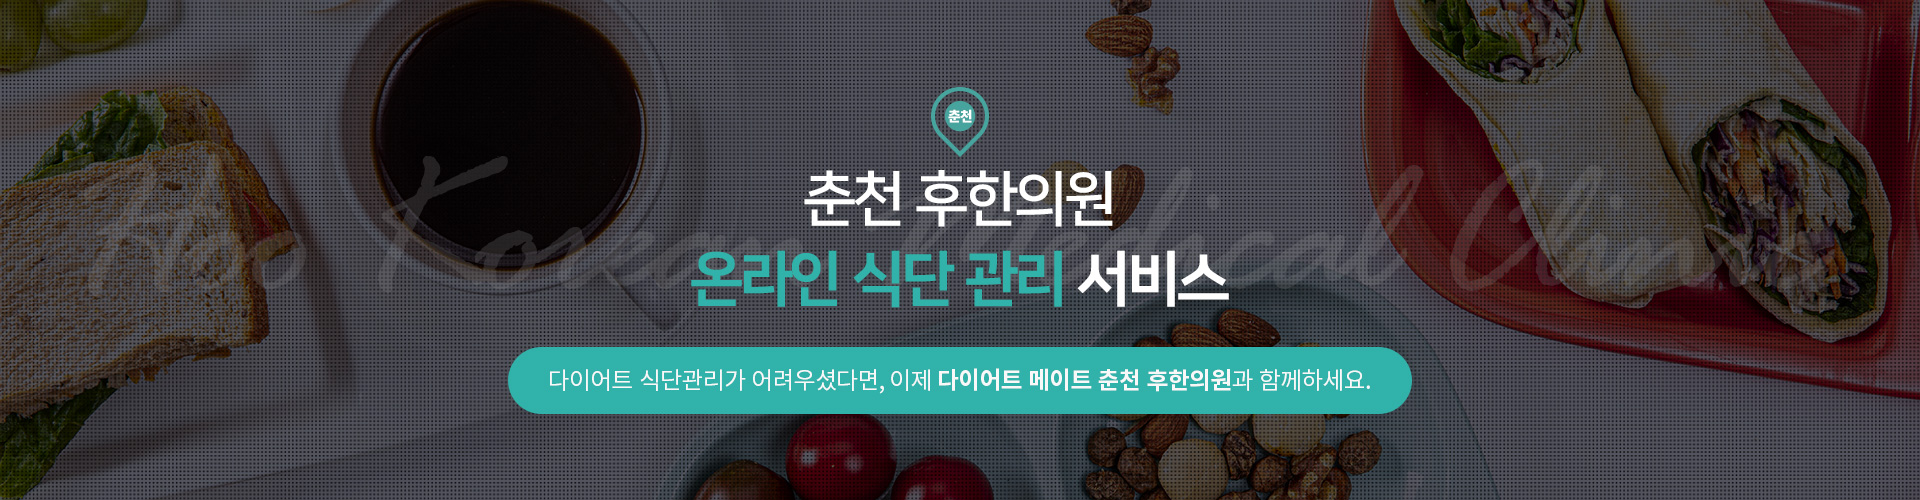 춘천 후한의원 온라인 식단 관리 서비스 